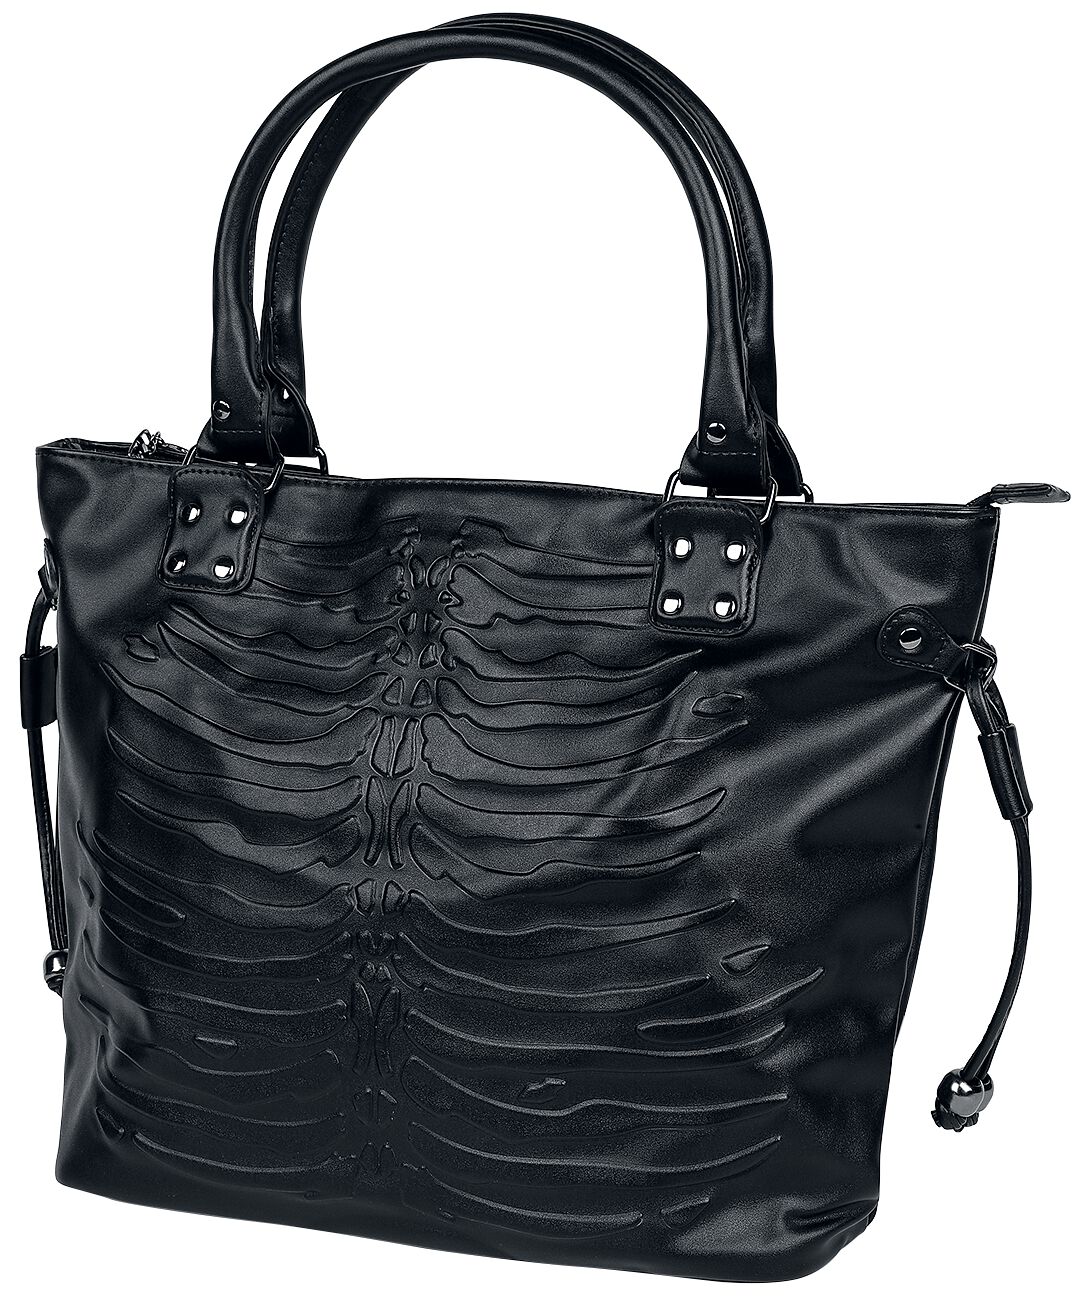 Banned Alternative - Skeleton Bag - Handtasche - schwarz